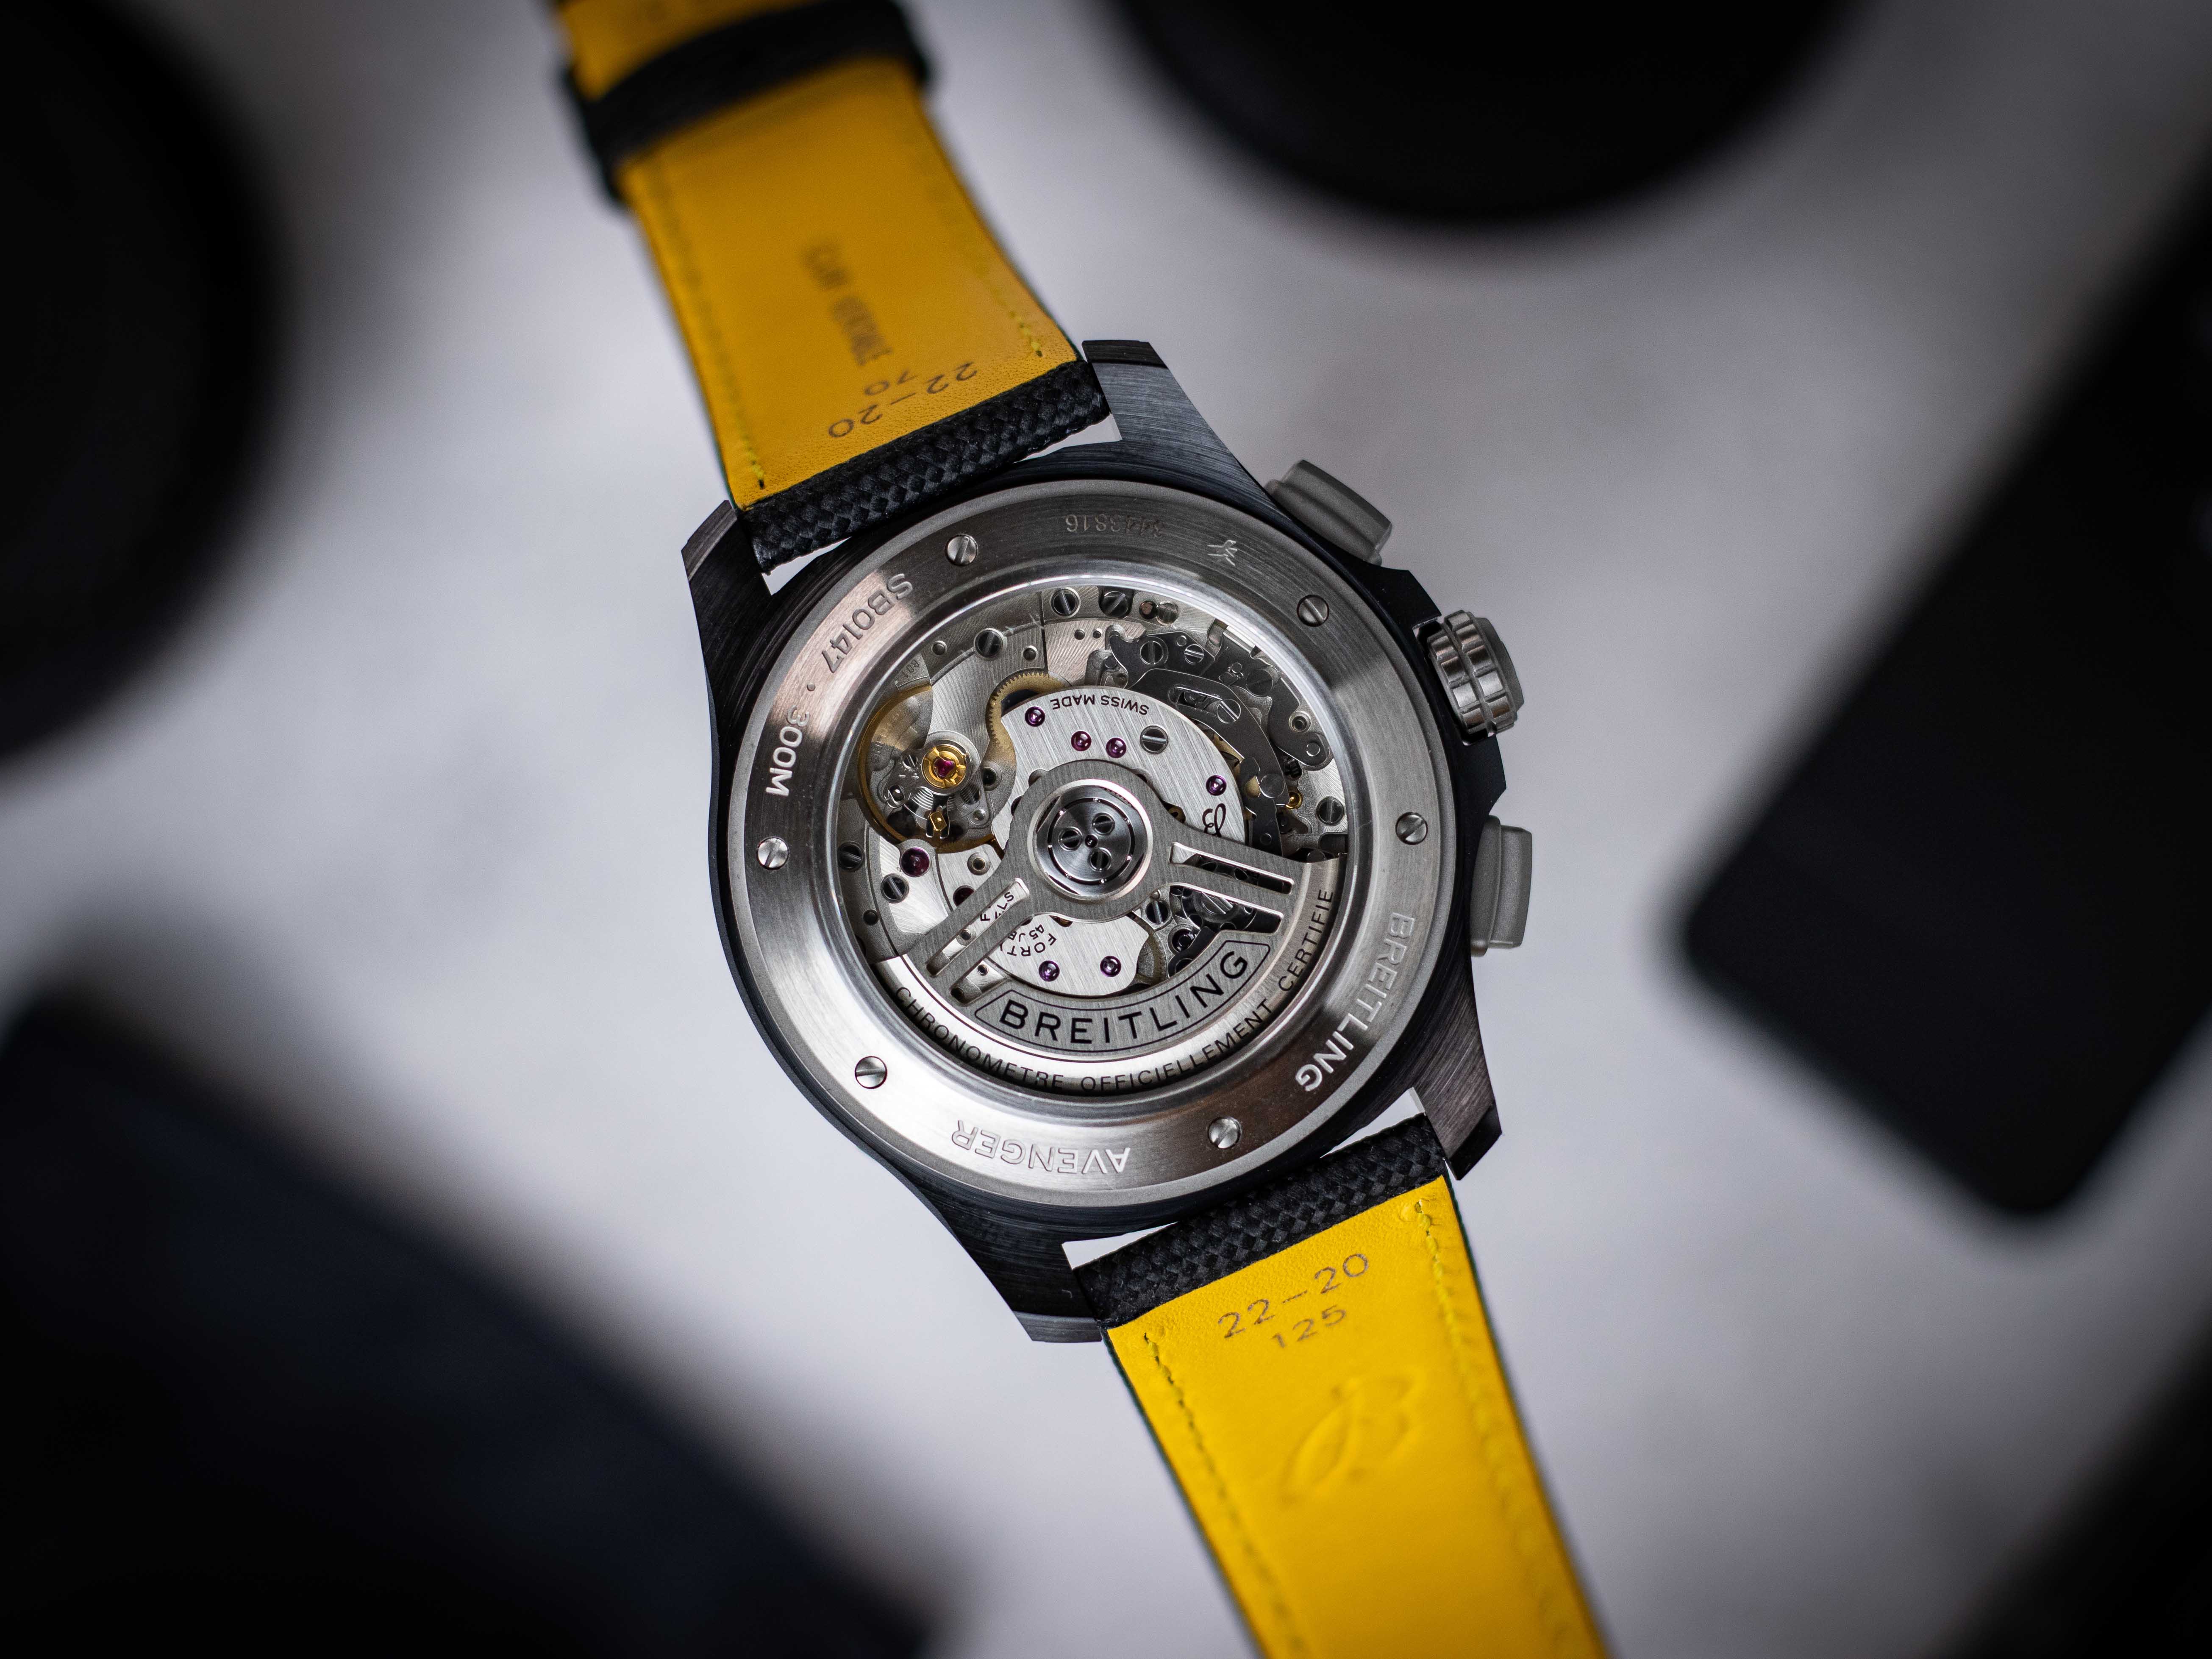 Aufnahme des offenen Gehäusebodens der Breitling Avenger Night Mission Chronograph vor weißem Hintergrund mit schwarzen Gegenständen und einem auf der Rückseite gelben Armband